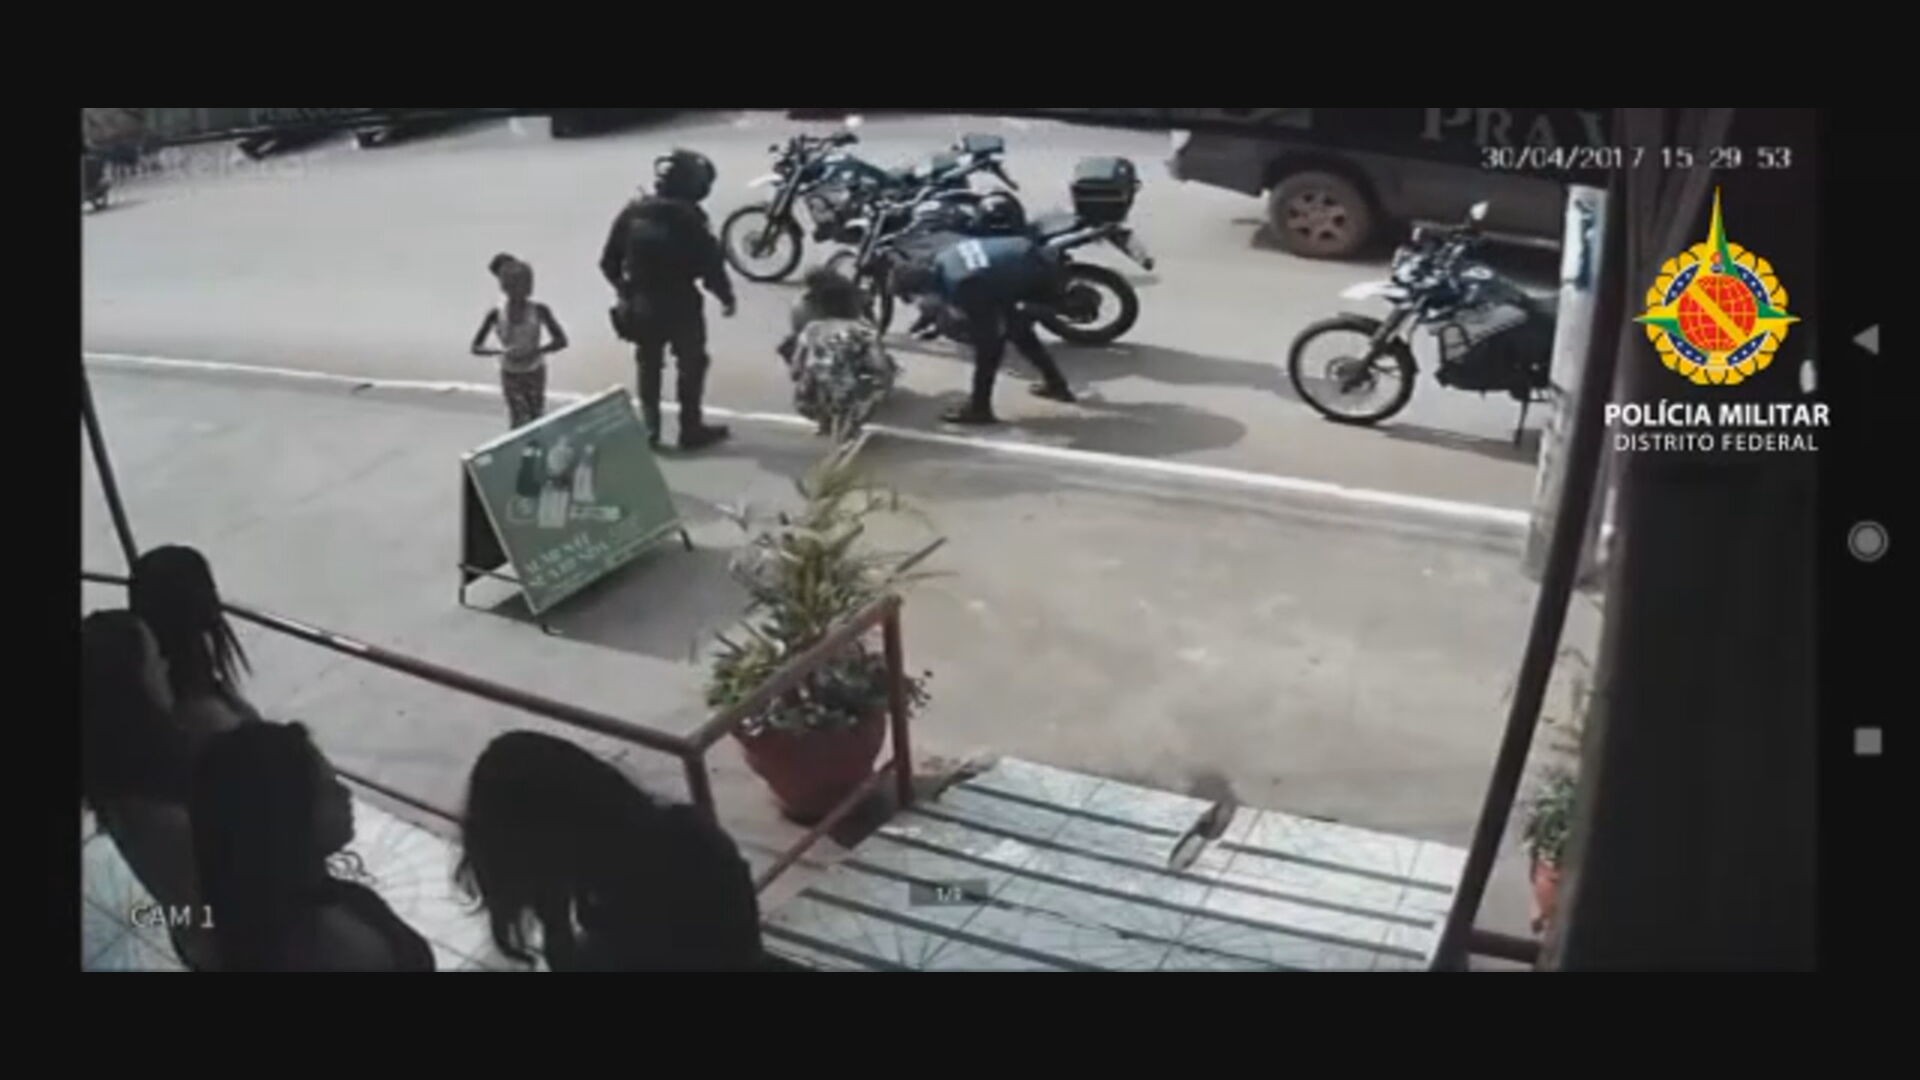 VÍDEO: PMs descem de motos e salvam bebê engasgado no DF